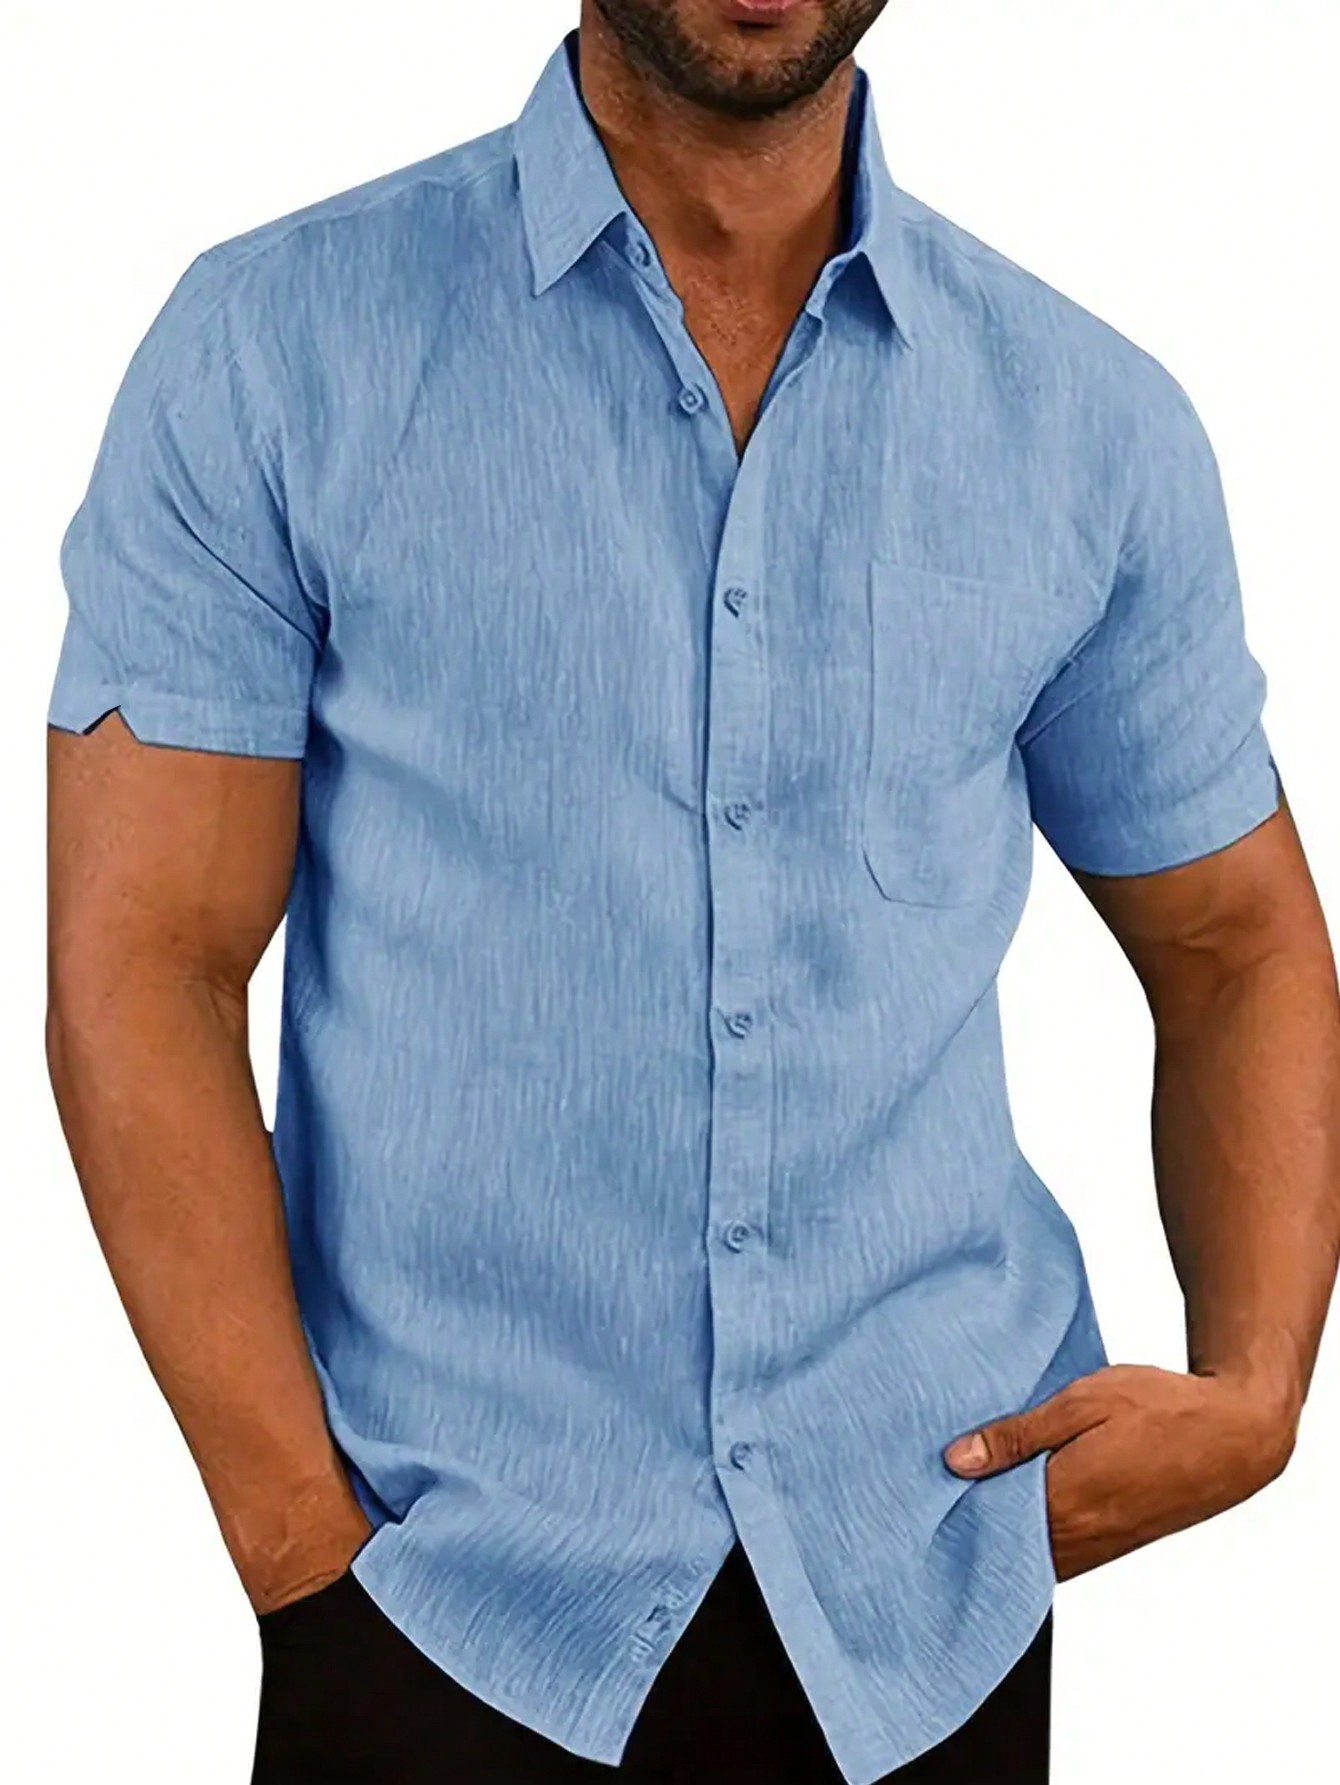 Мужская повседневная однотонная рубашка с коротким рукавом, синий